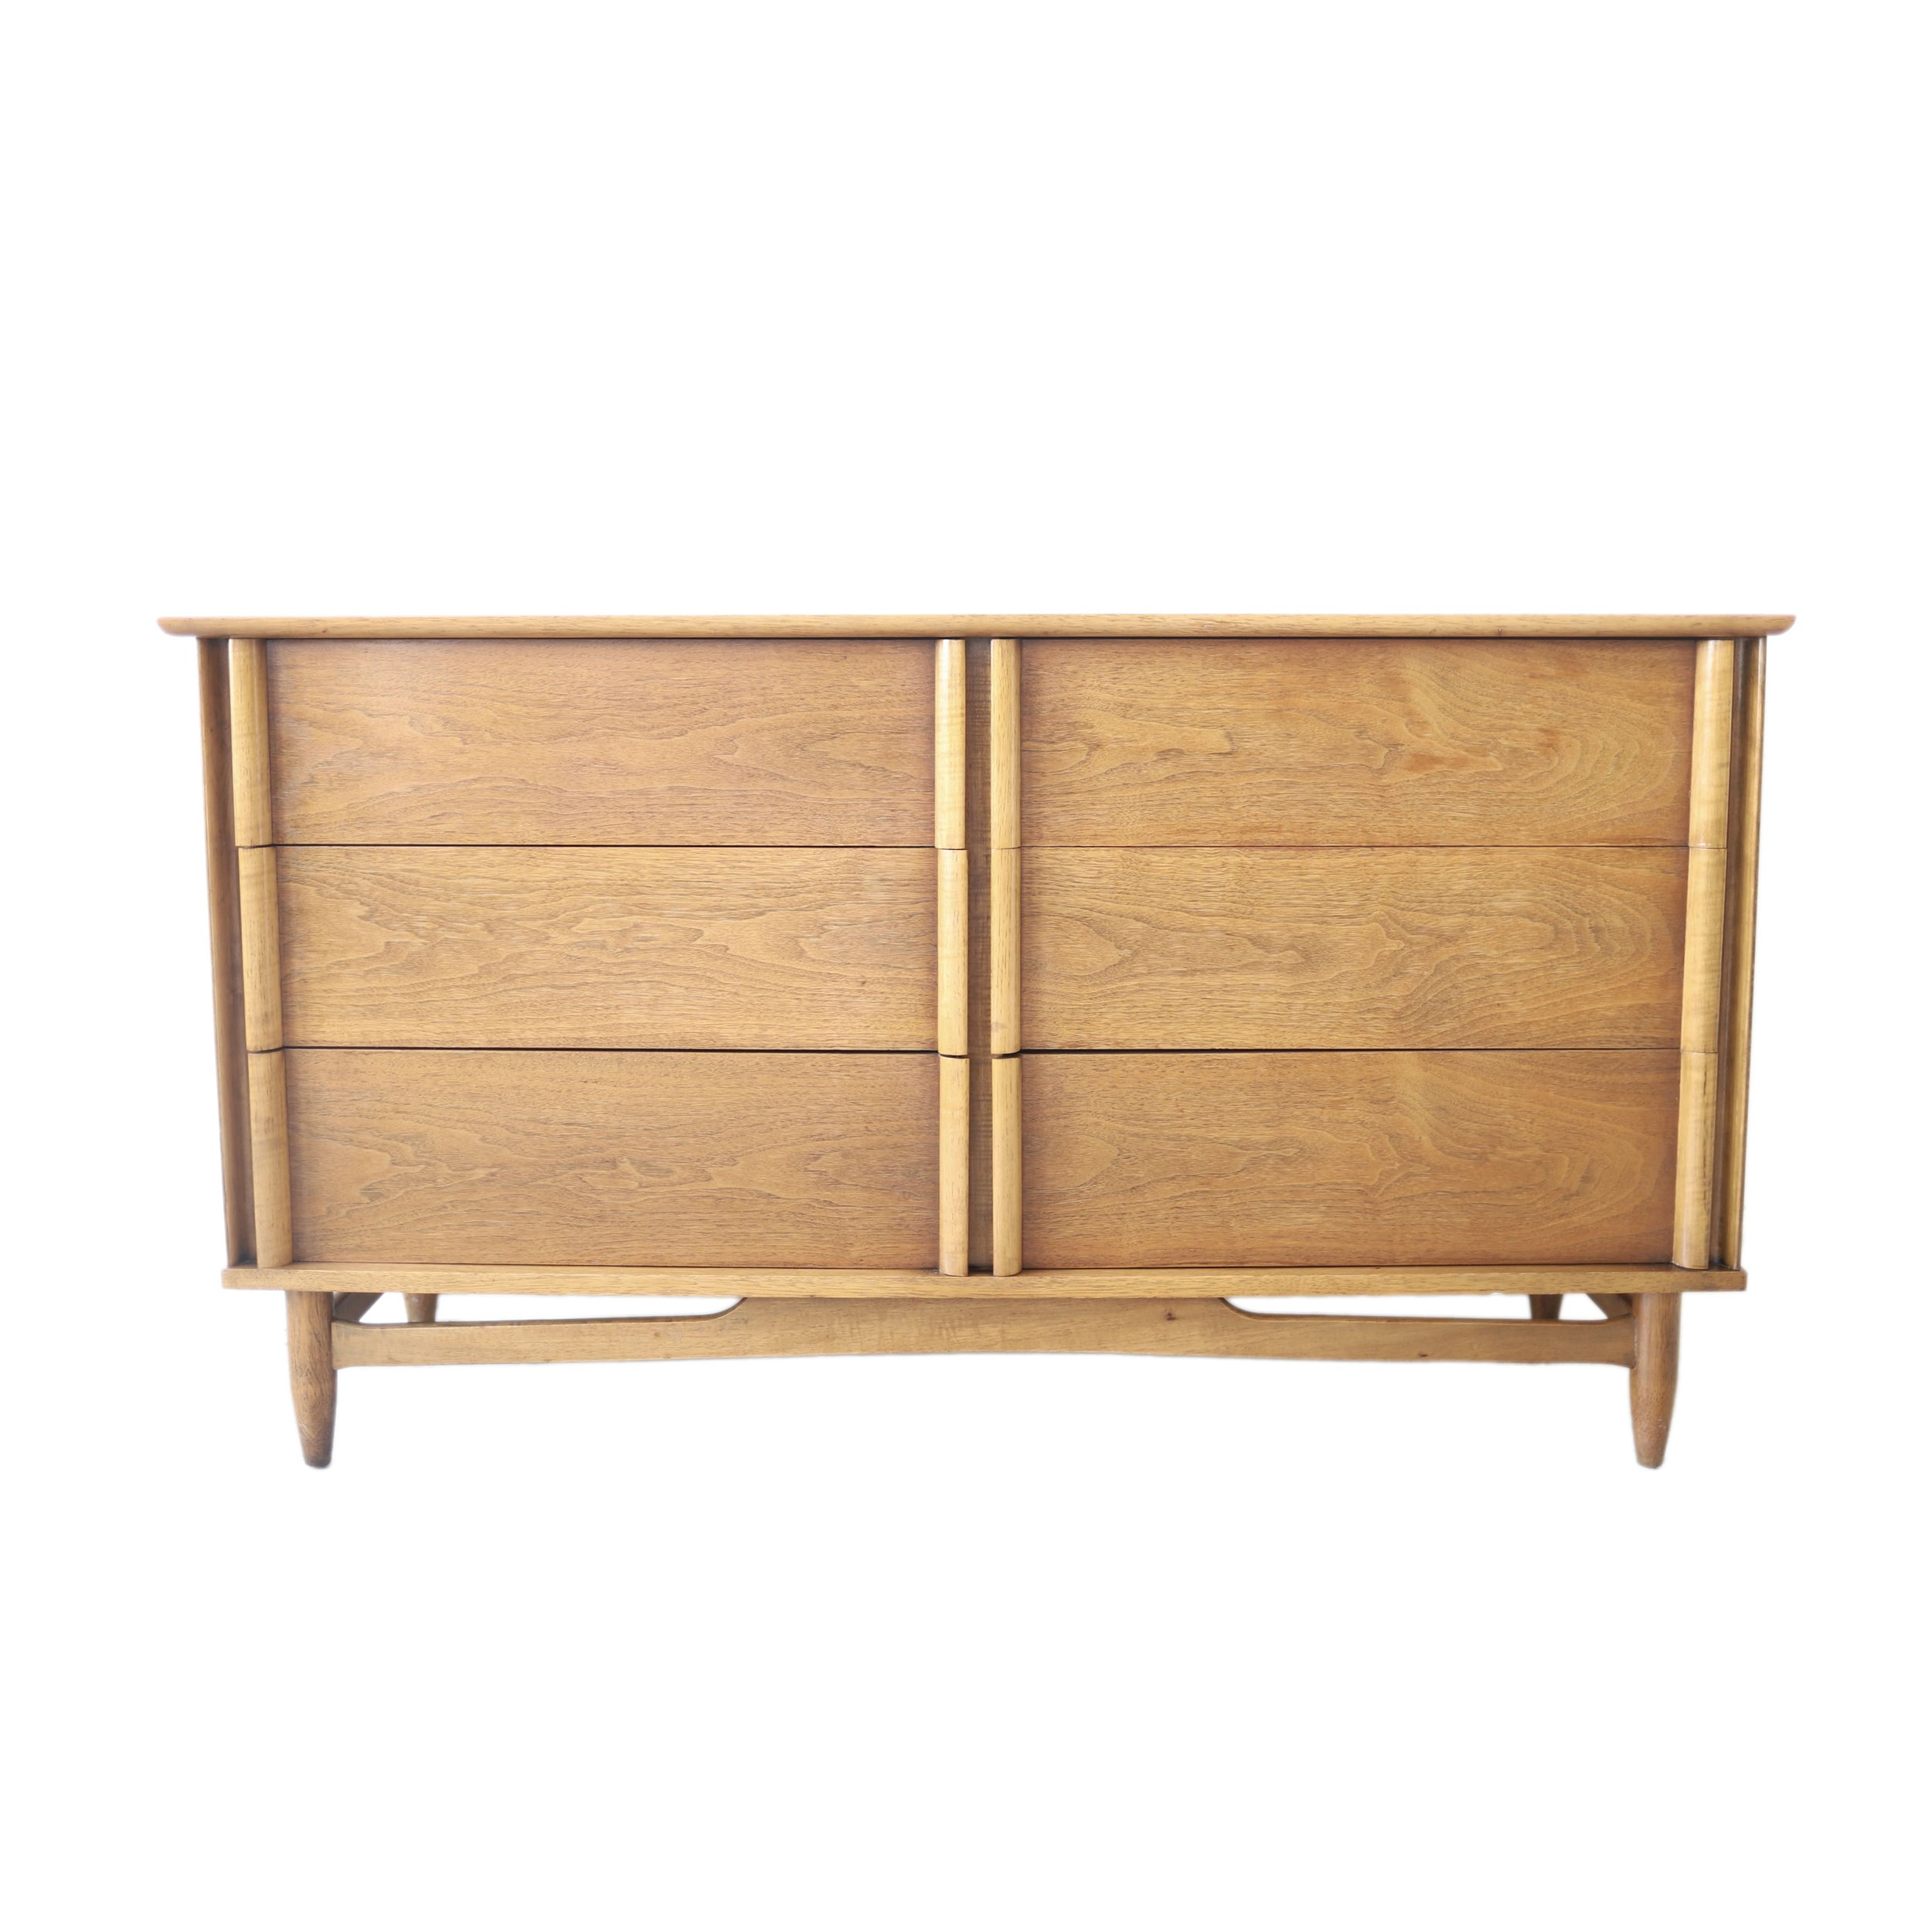 vintage mid century modern 6 drawer dresser.jpg